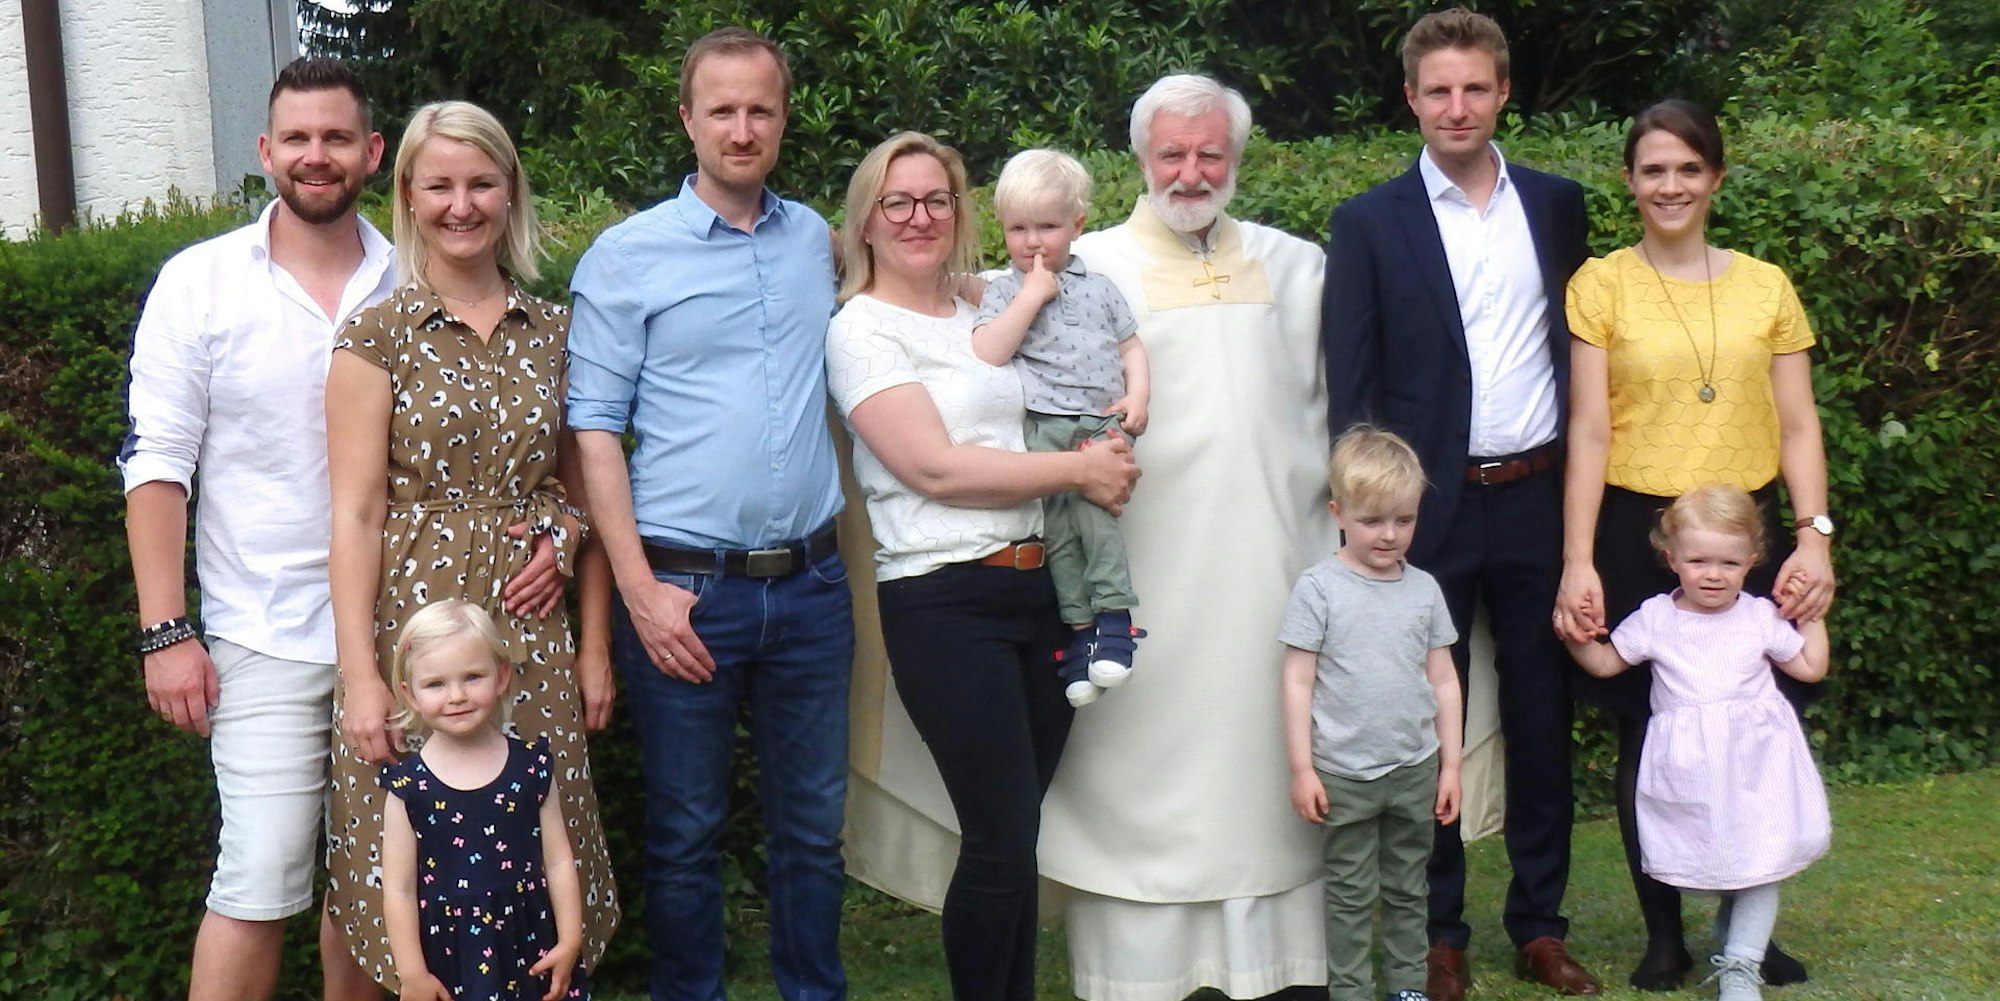 Priester Udo Casel nach seiner Primizfeier 2020 mit Kindern und Enkeln: Ein Bild, das in der katholischen Kirche Seltenheitswert hat.